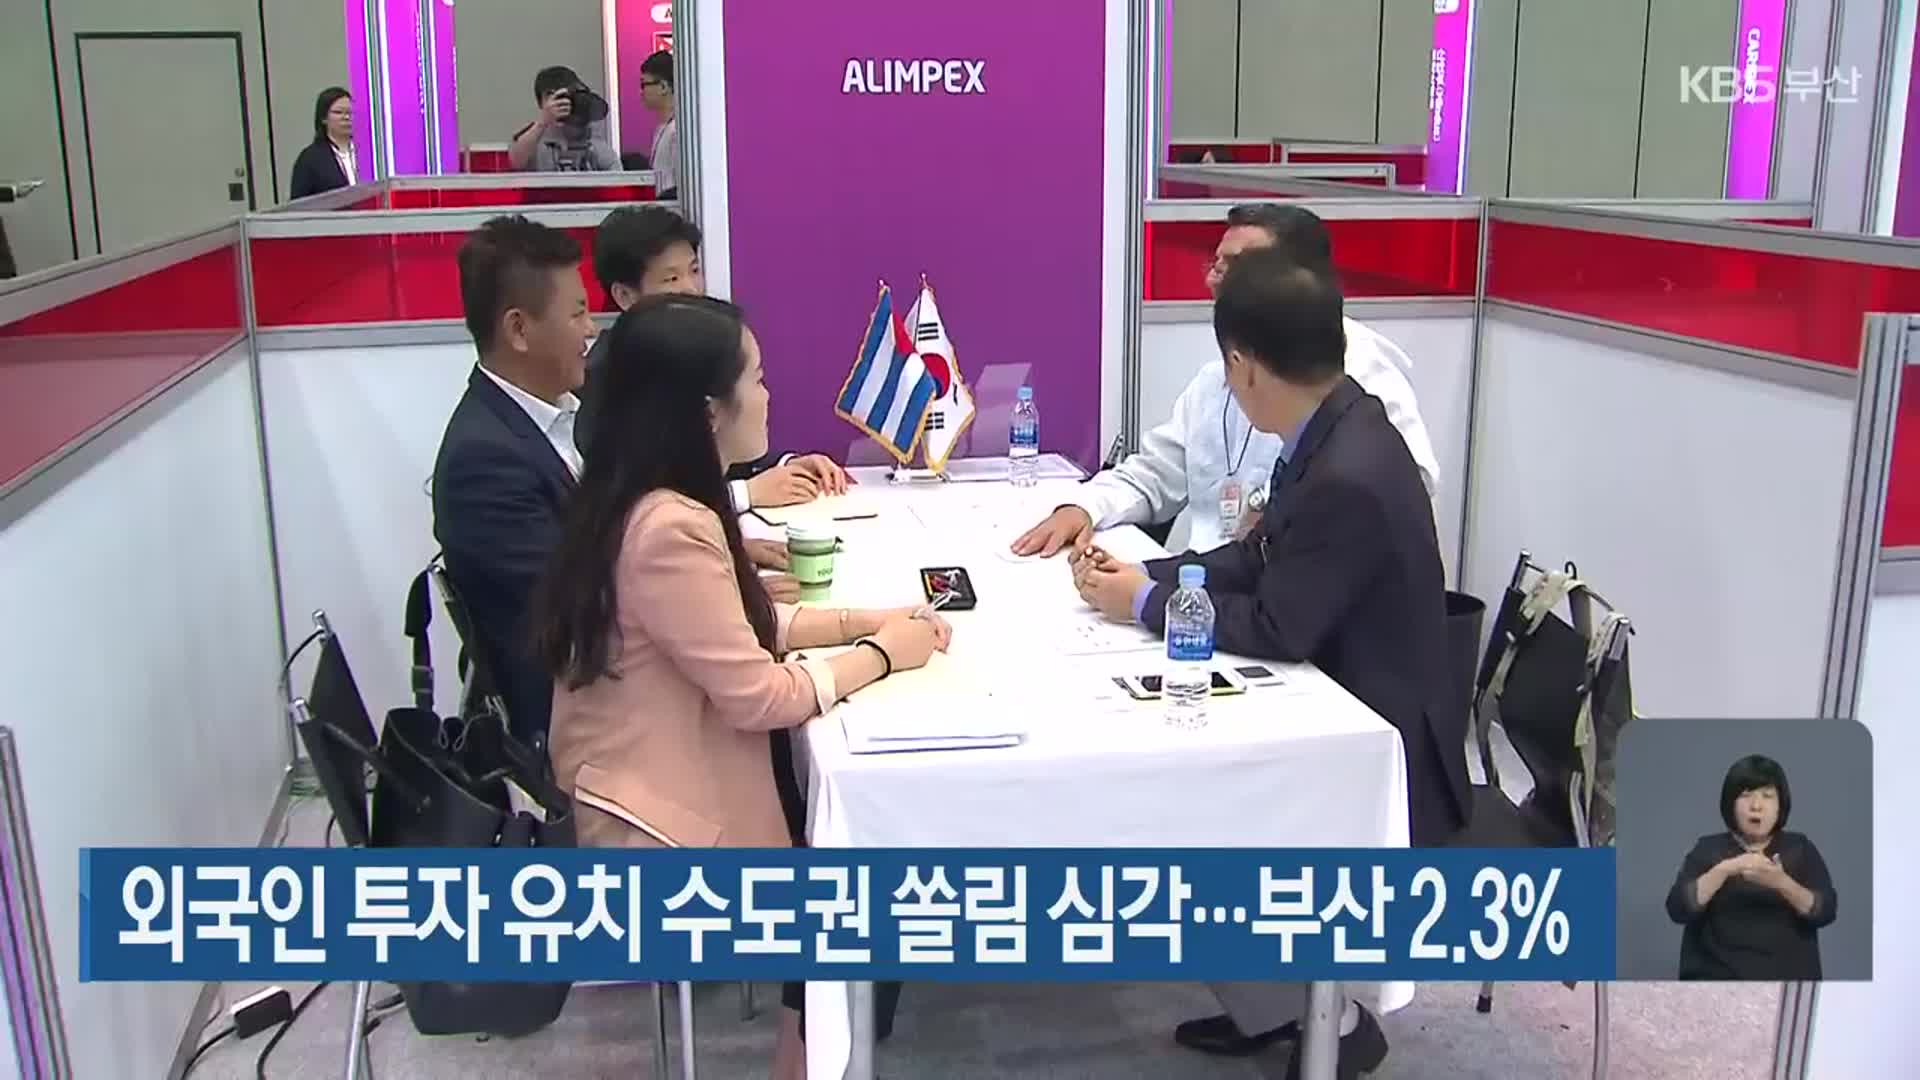 외국인 투자 유치 수도권 쏠림 심각…부산 2.3%